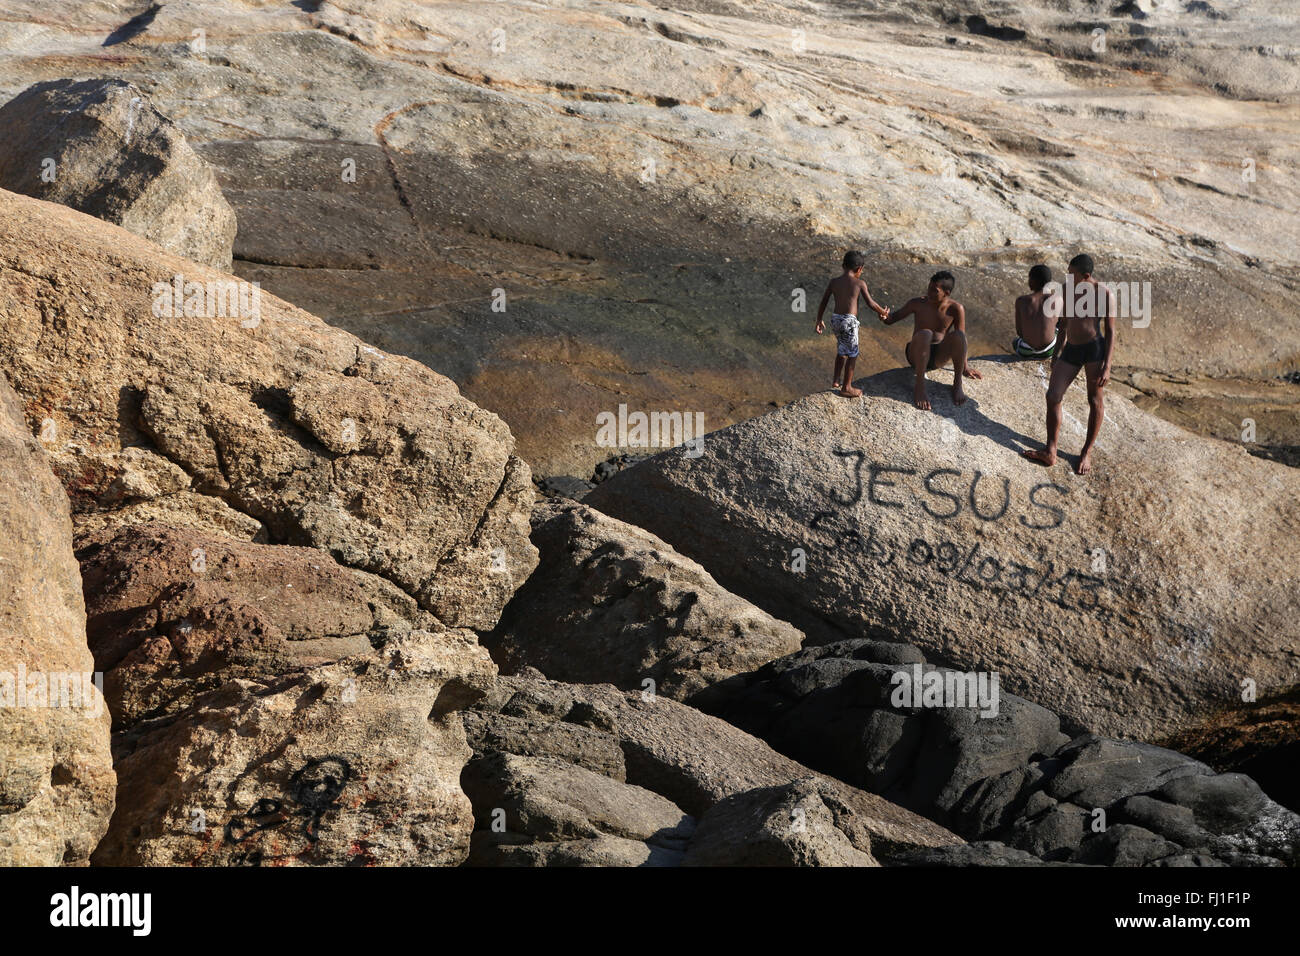 Brasilianischen Jungs in der Nähe von Ipenama Strand mit "Jesus" schreiben auf einem Felsen, Rio de Janeiro Stockfoto